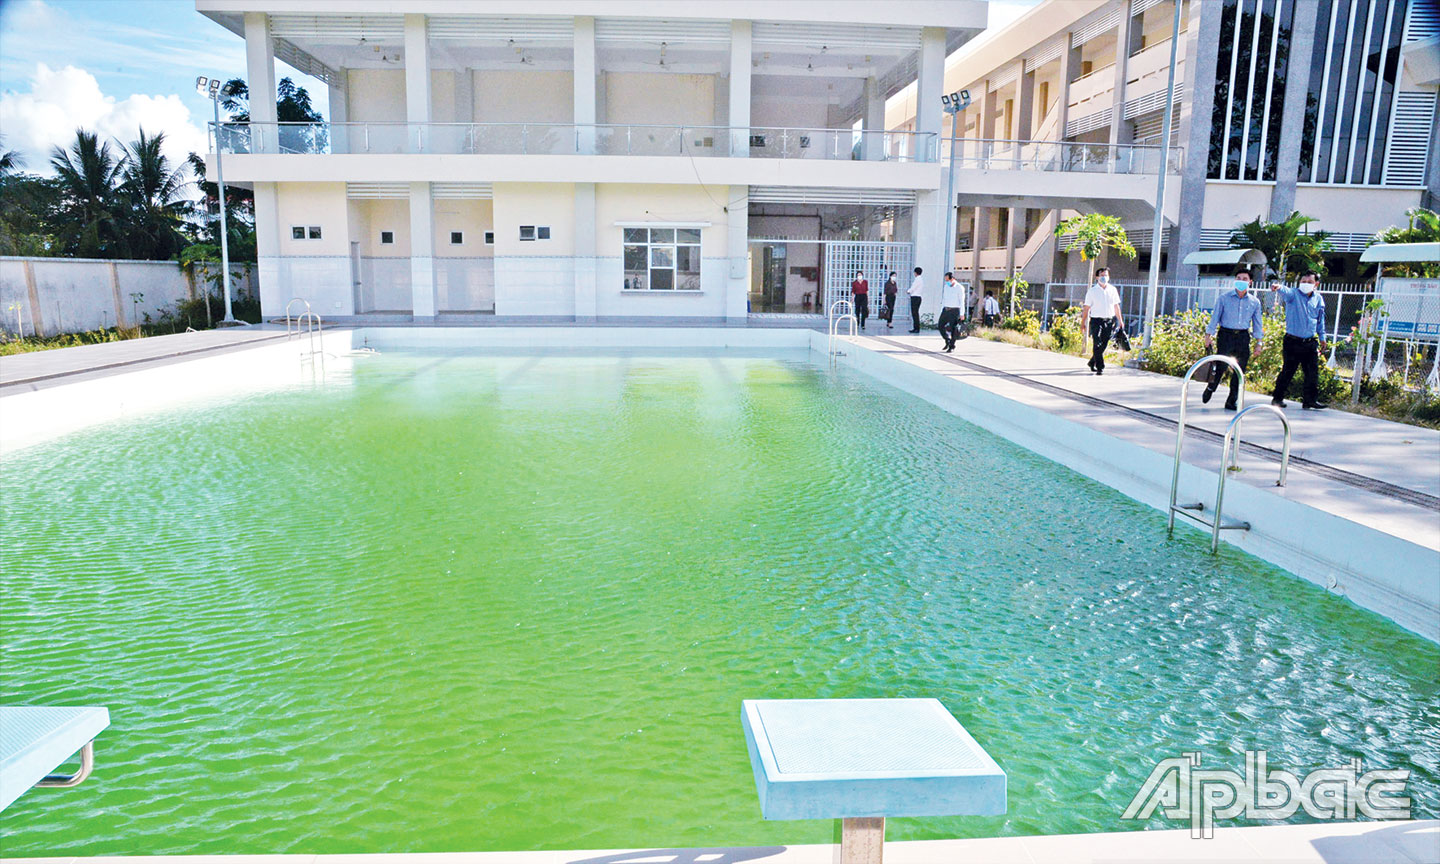 Hồ bơi Trường Cao đẳng Y tế Tiền Giang vẫn chưa được khai thác sử dụng hiệu quả.